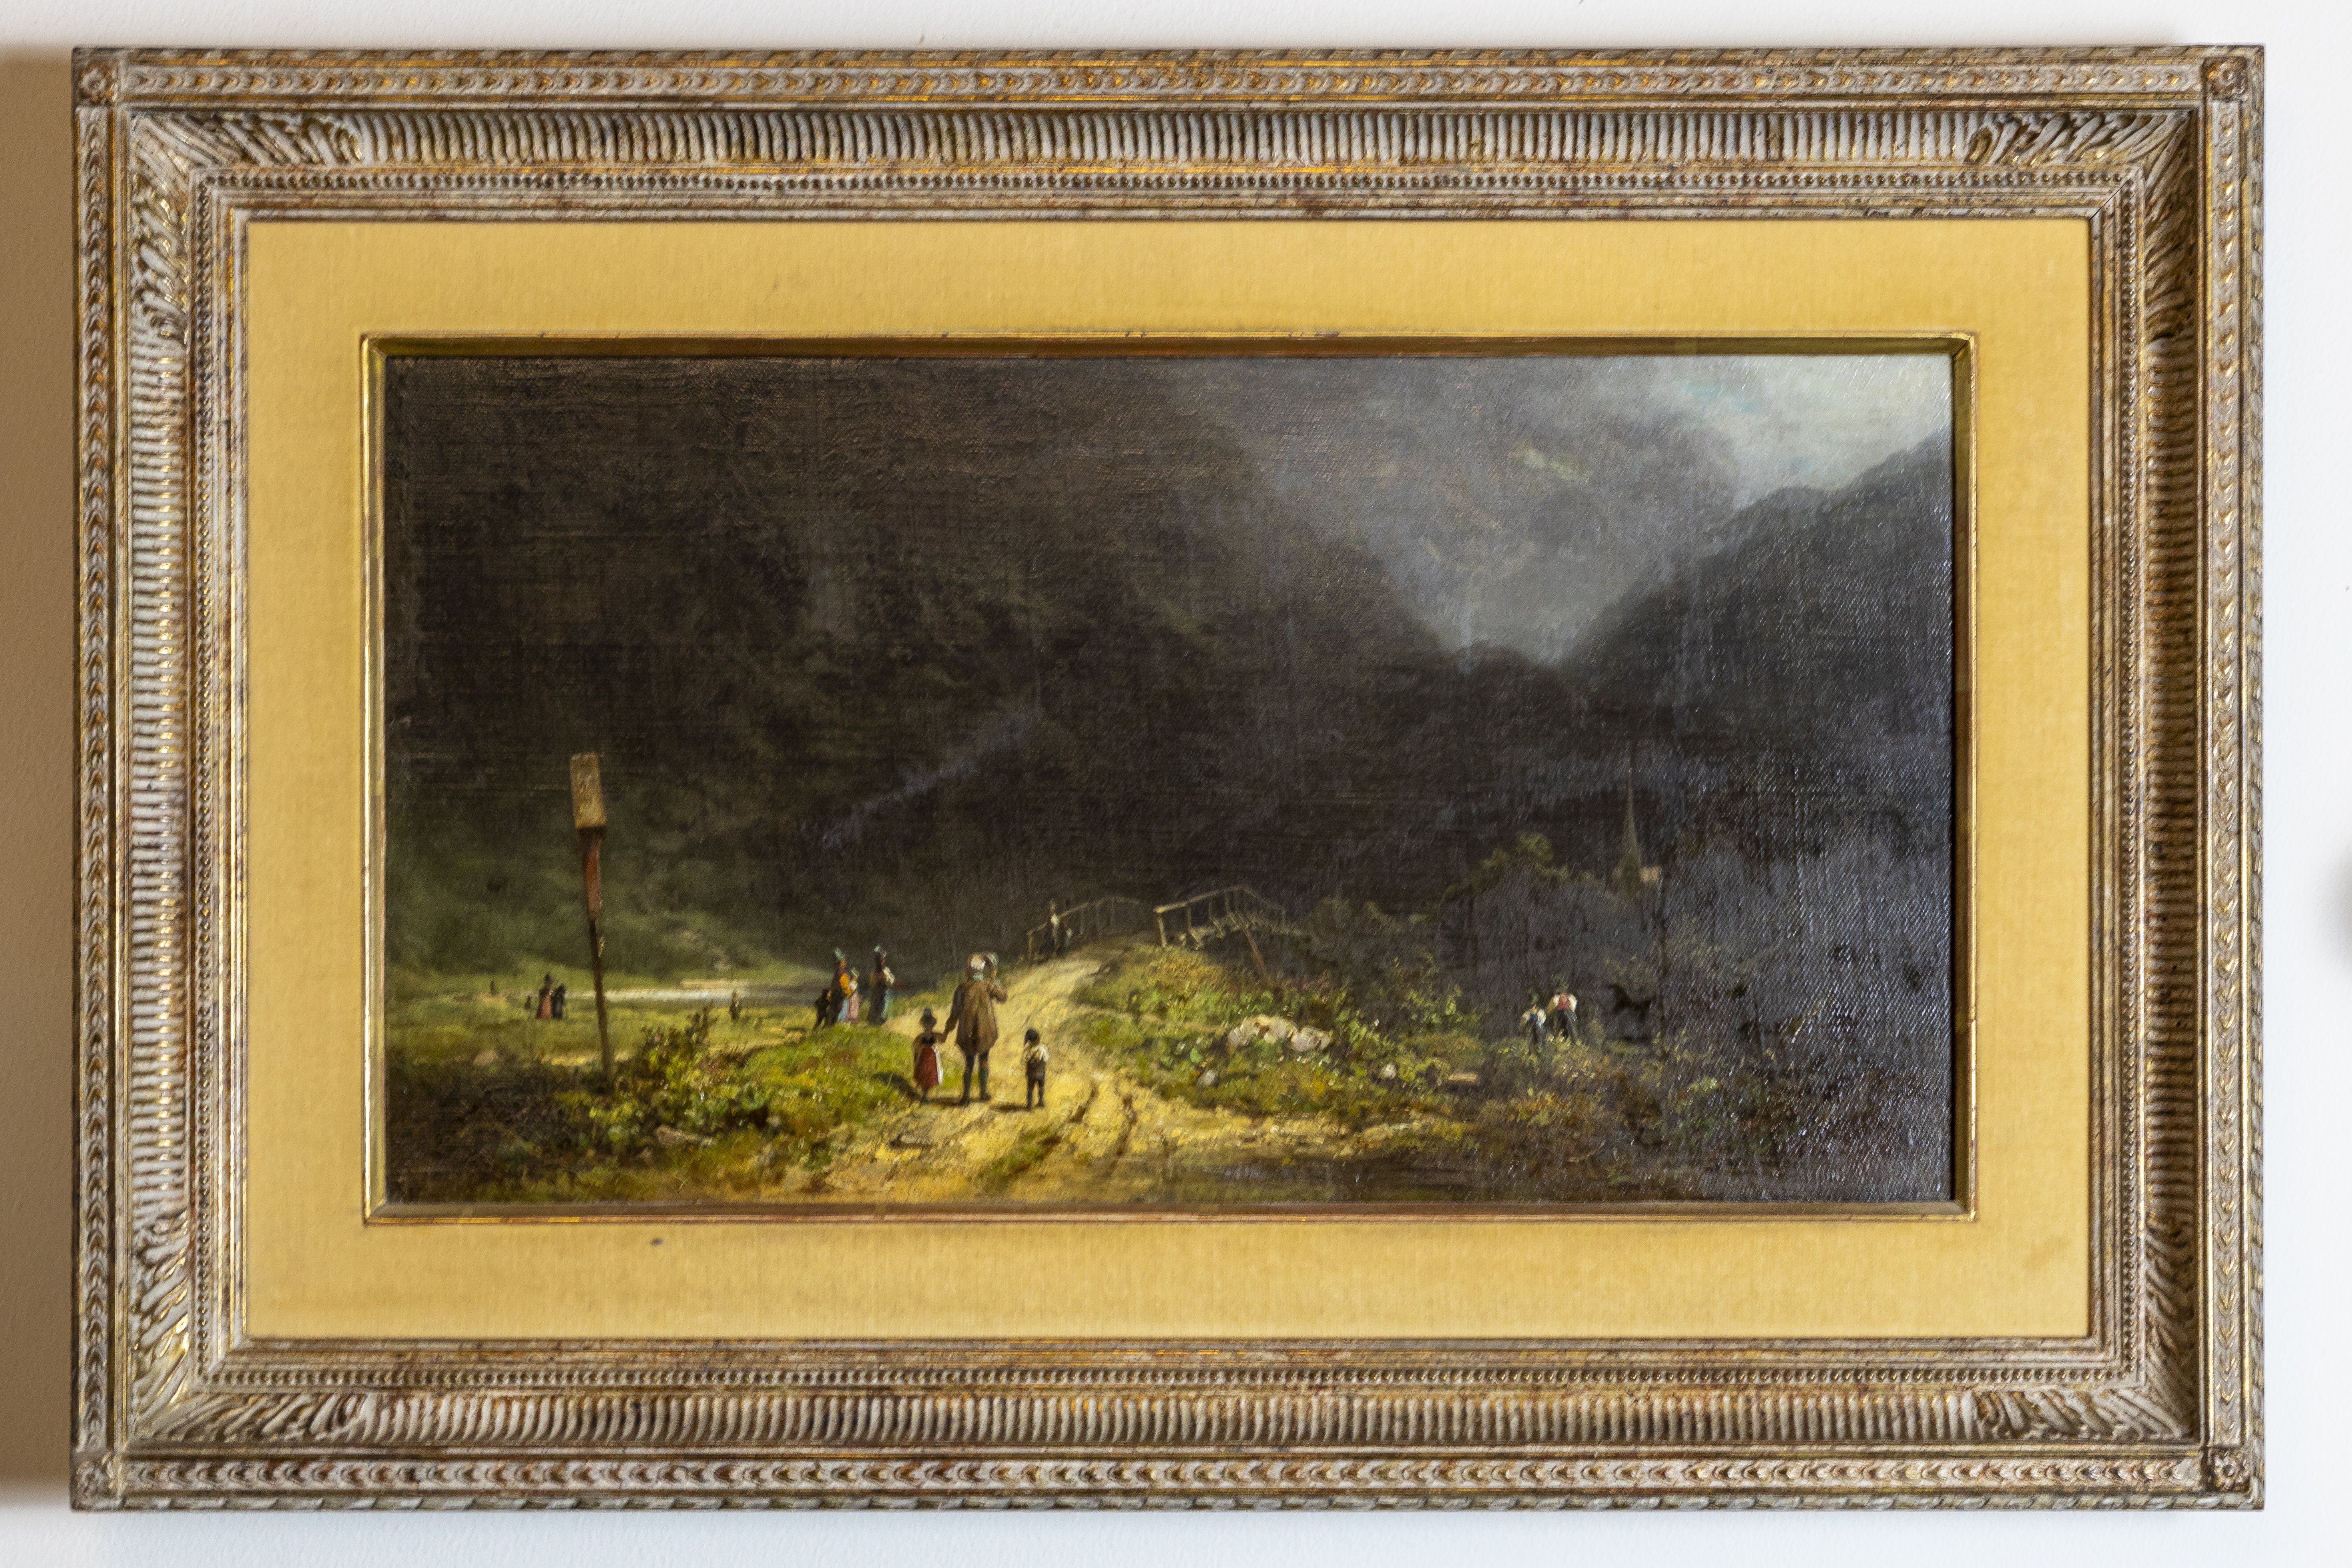 Gewitterläuten im Gebirge - Kirchgang, Ölgemälde von Carl Spitzweg, um 1860 (Schloß Wernigerode GmbH RR-F)